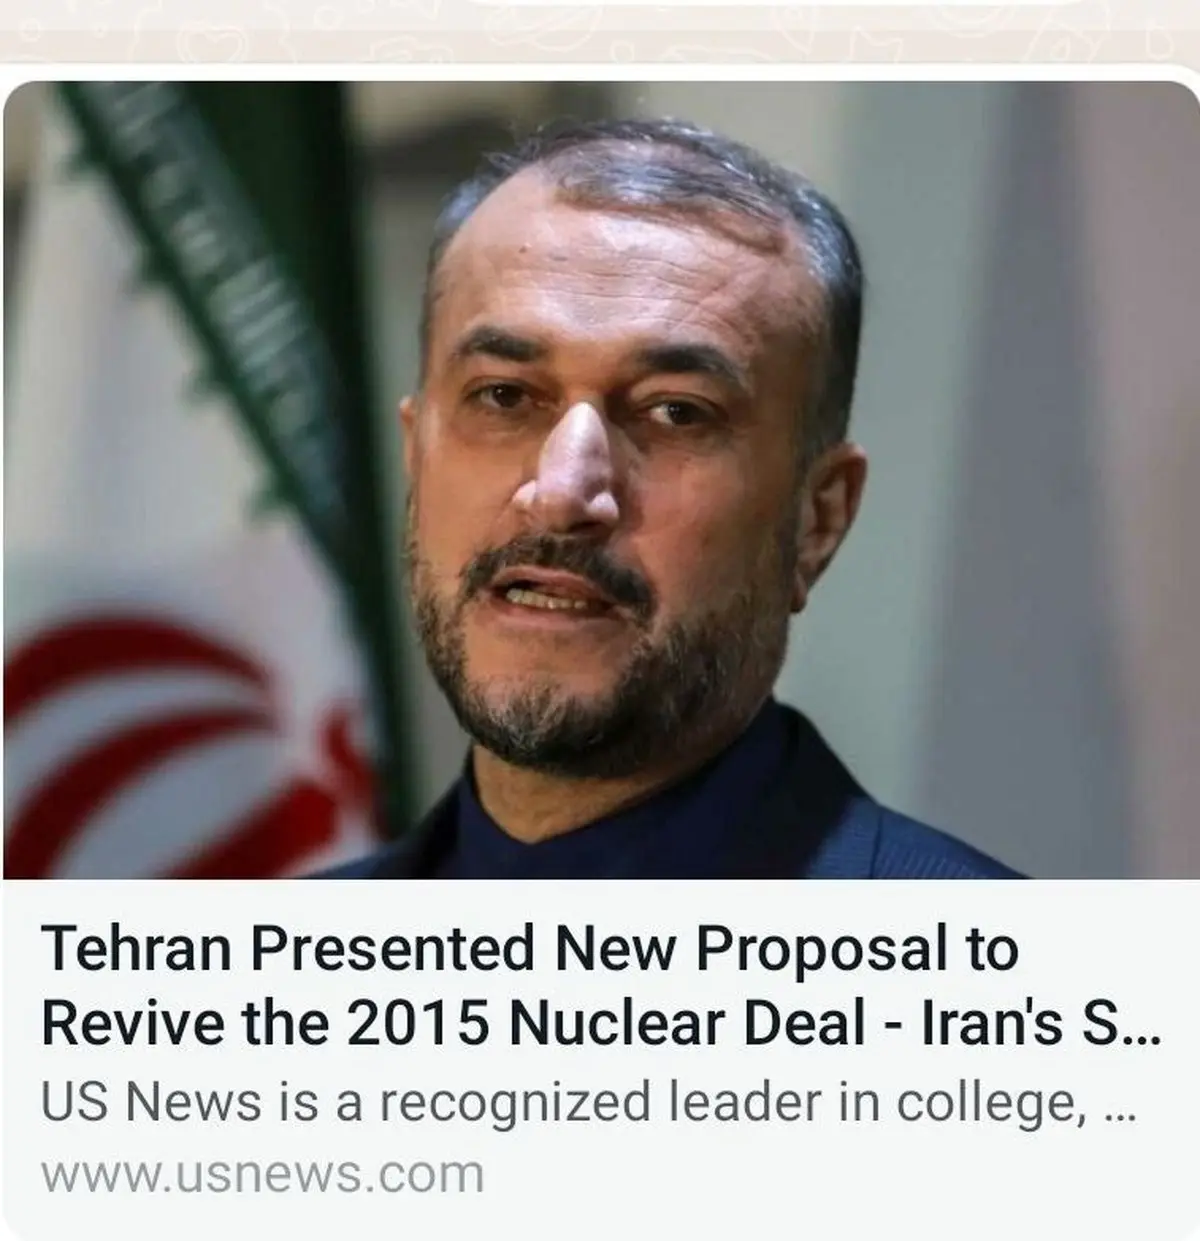 طرح جدید ایران برای احیا برجام | پشت پرده مذاکرات چیست؟ | طرح جدید ایران به آمریکا داده شد